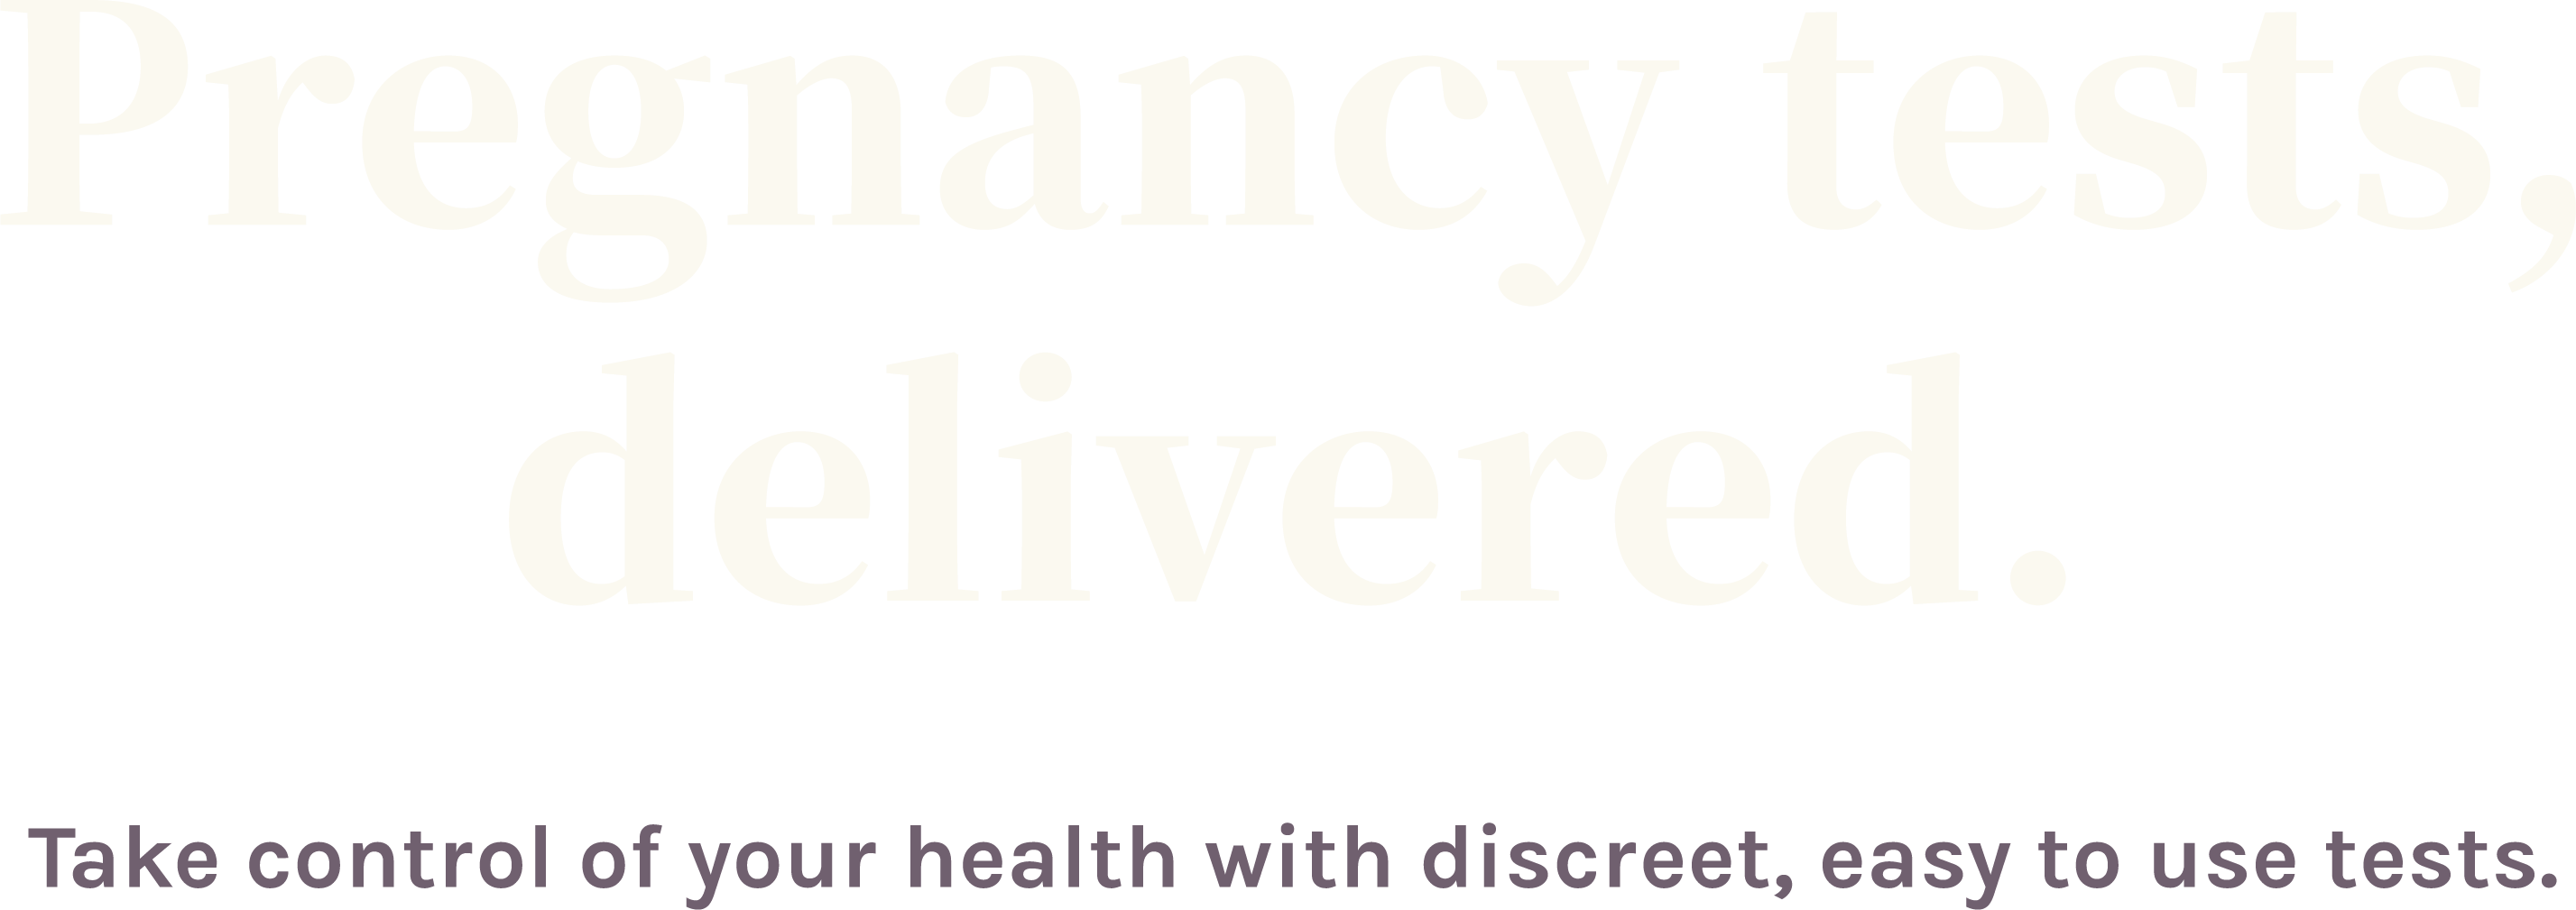 Pregnancy tests, delivered